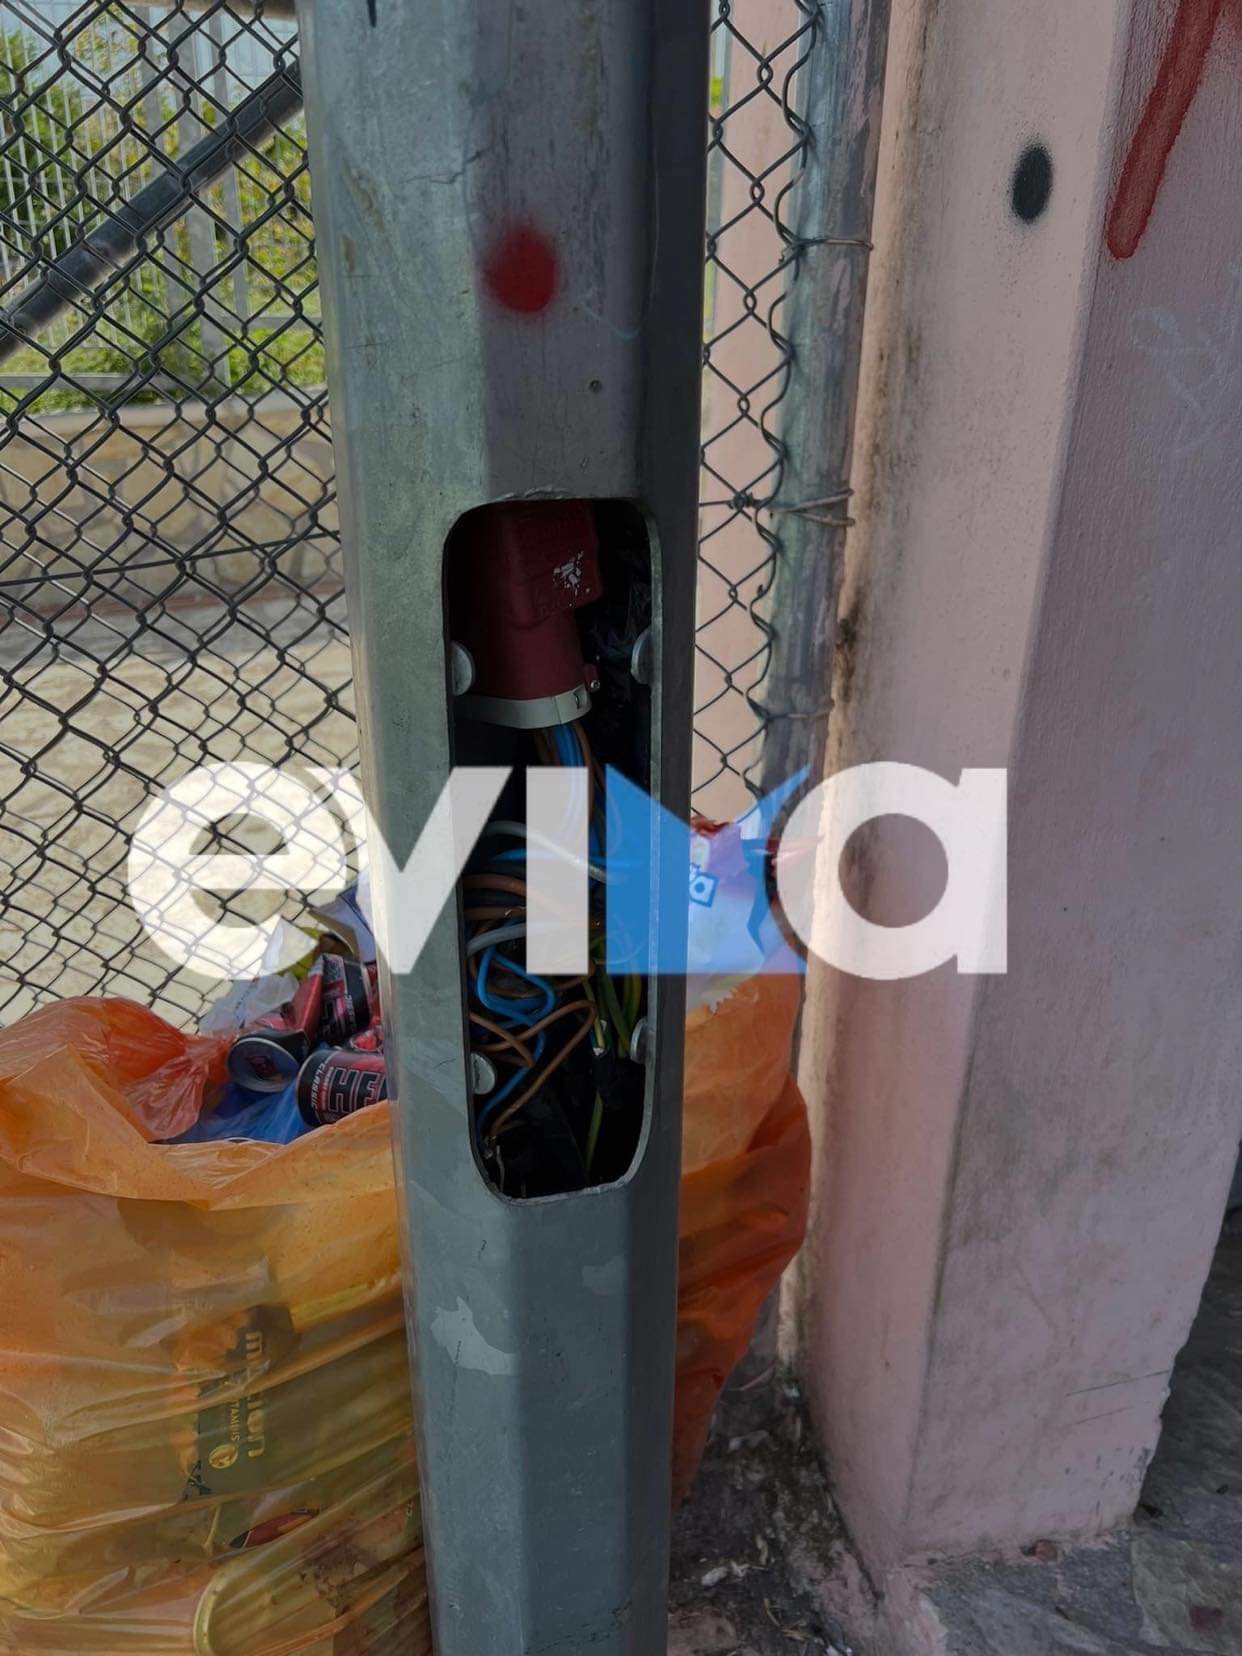 Εύβοια: Καλώδια εκτεθειμένα σε γήπεδα της Ανθηδόνας – «Θα σκοτωθεί κανά παιδί και αλλάξτε πλανήτη», λέει ο πρόεδρος (pics)